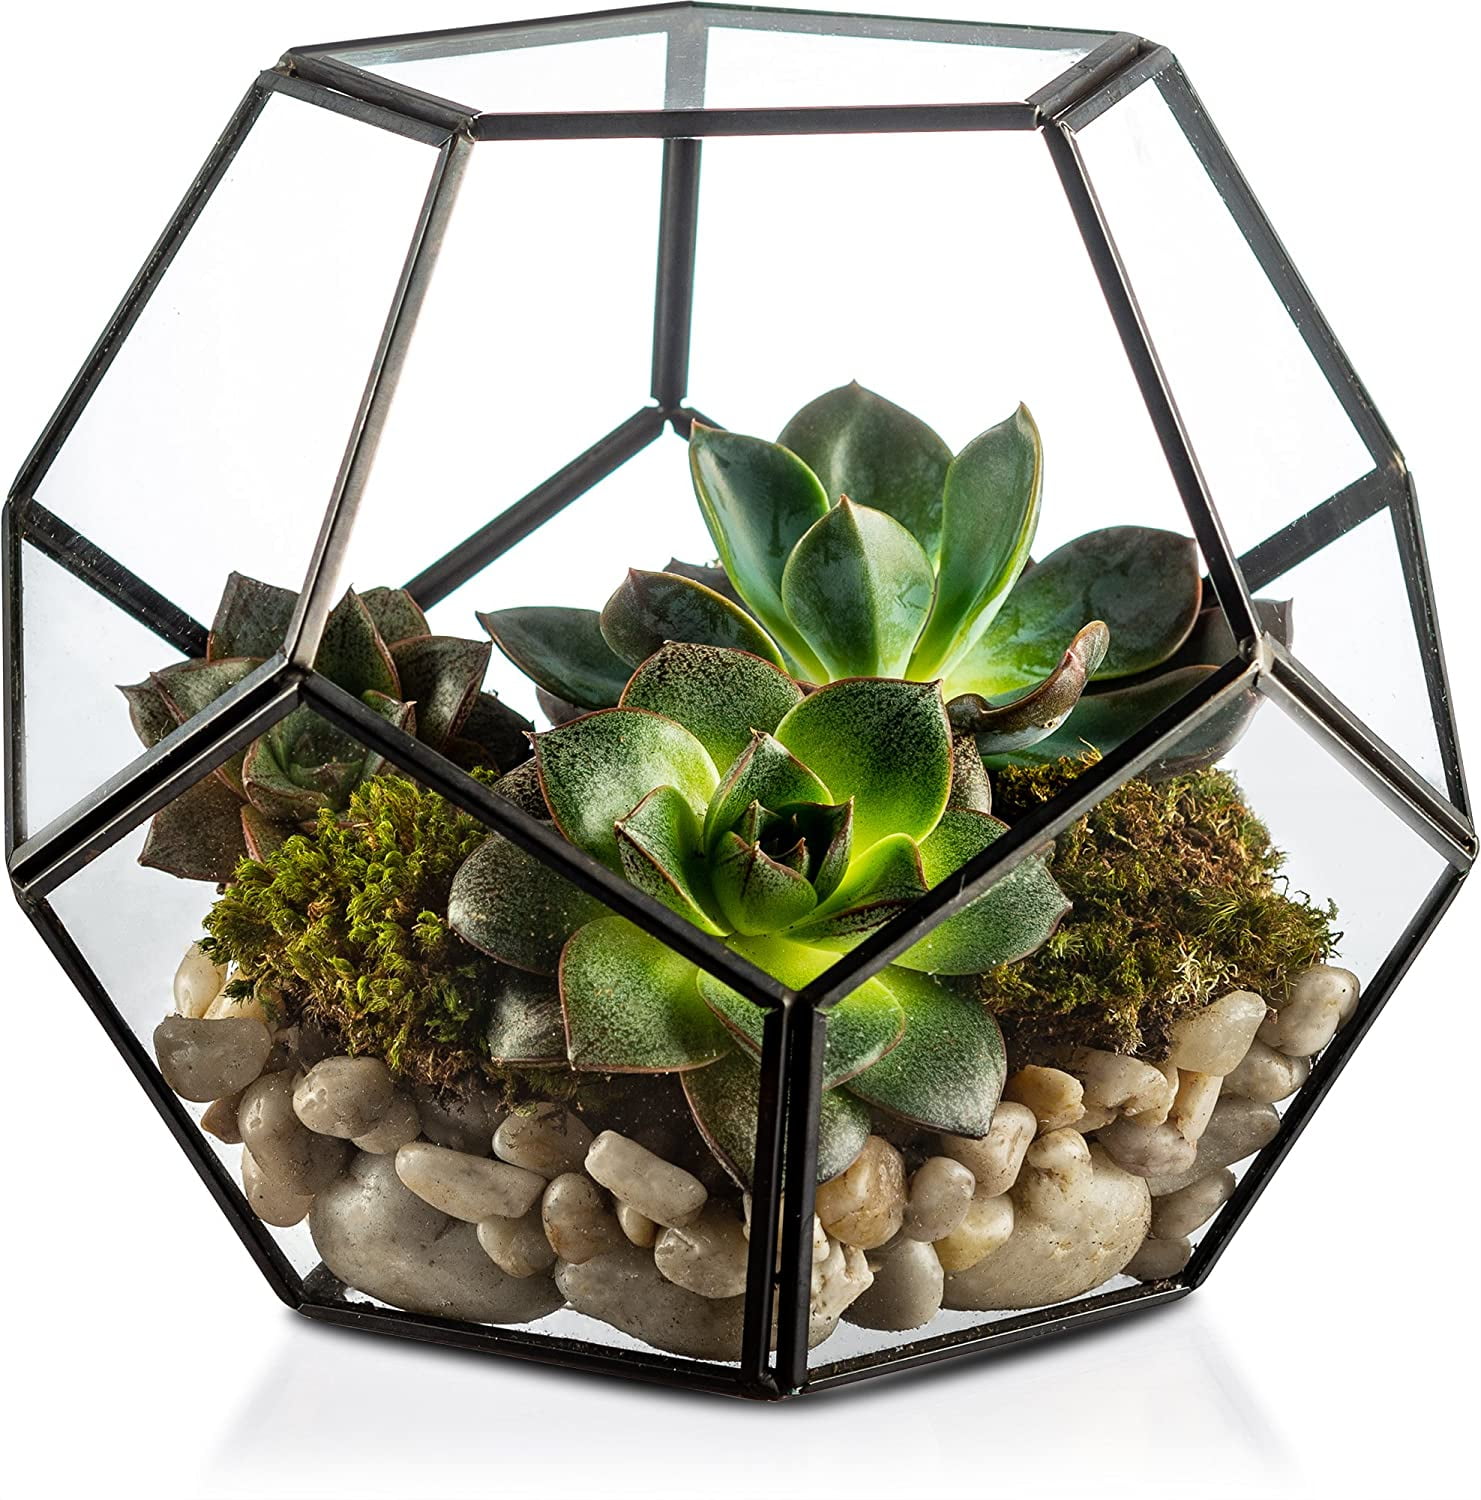 Details about   15cm Triangle Greenhouse Glass Terrarium DIY Micro Landscape Succulent Plants 